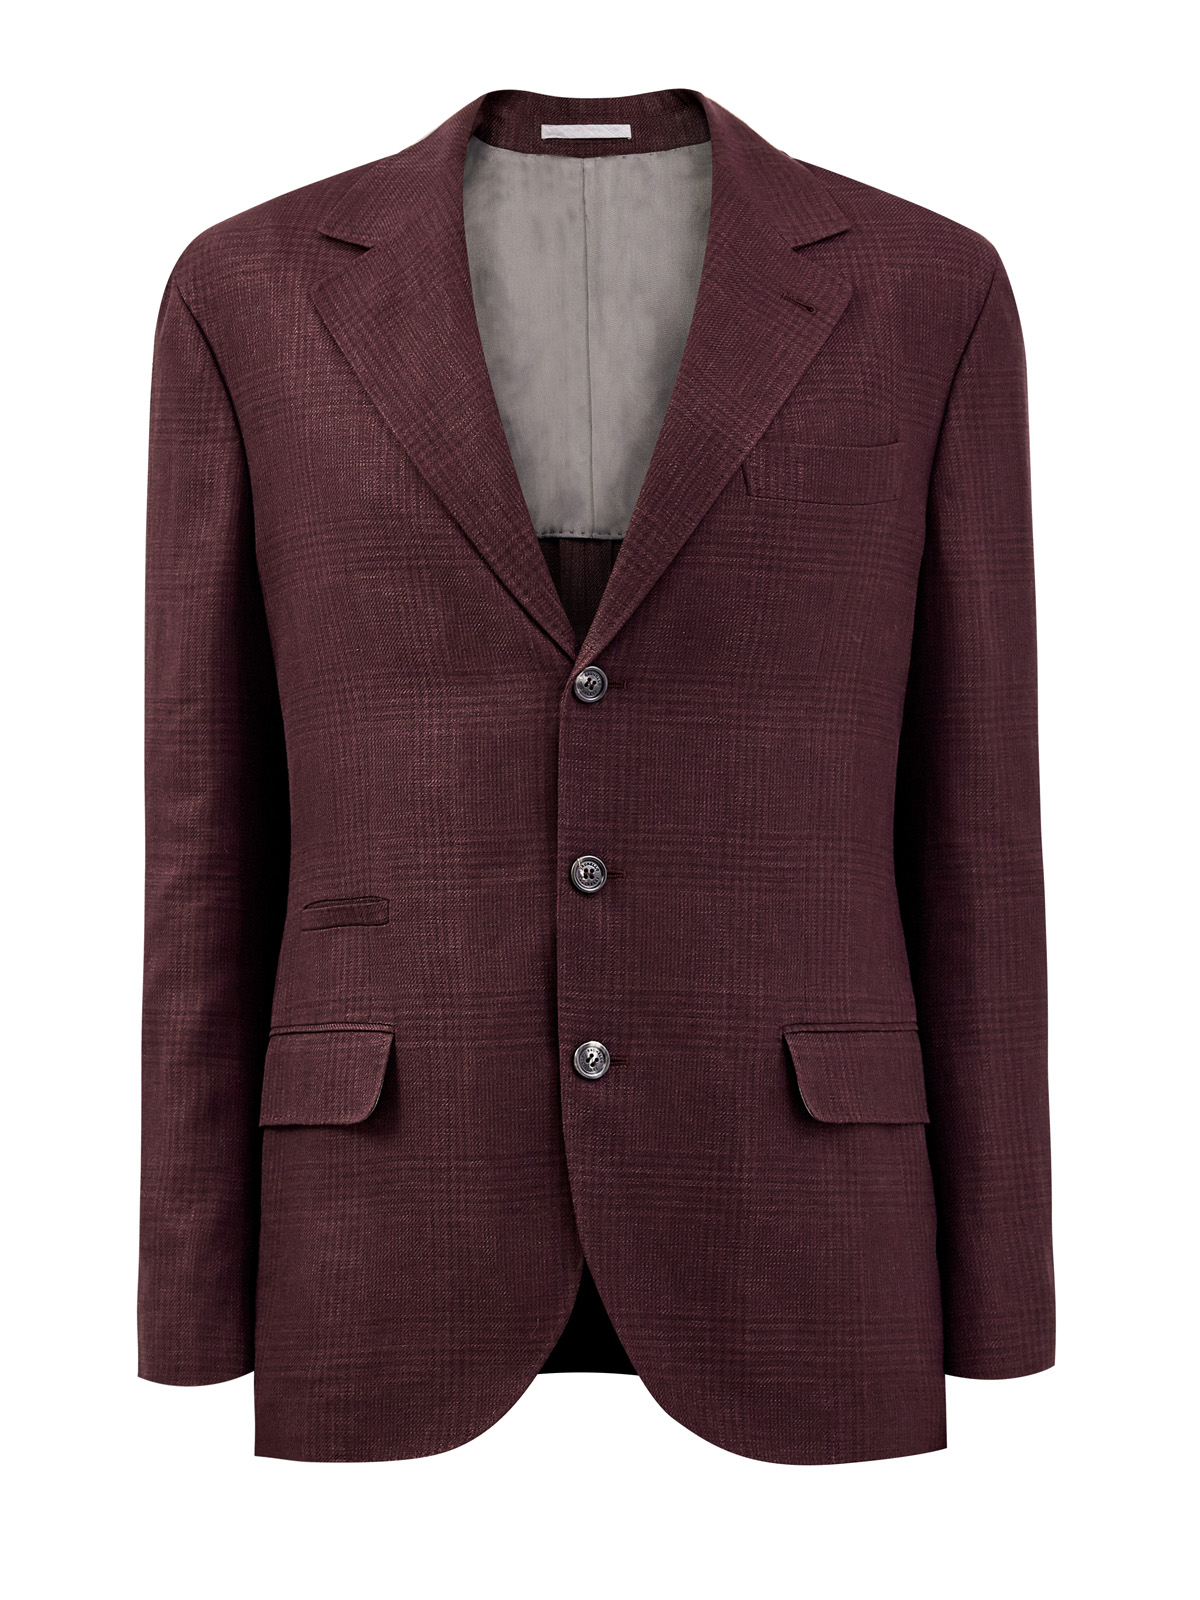 Однобортный пиджак из пряжи букле с мелованным принтом BRUNELLO CUCINELLI бордового цвета